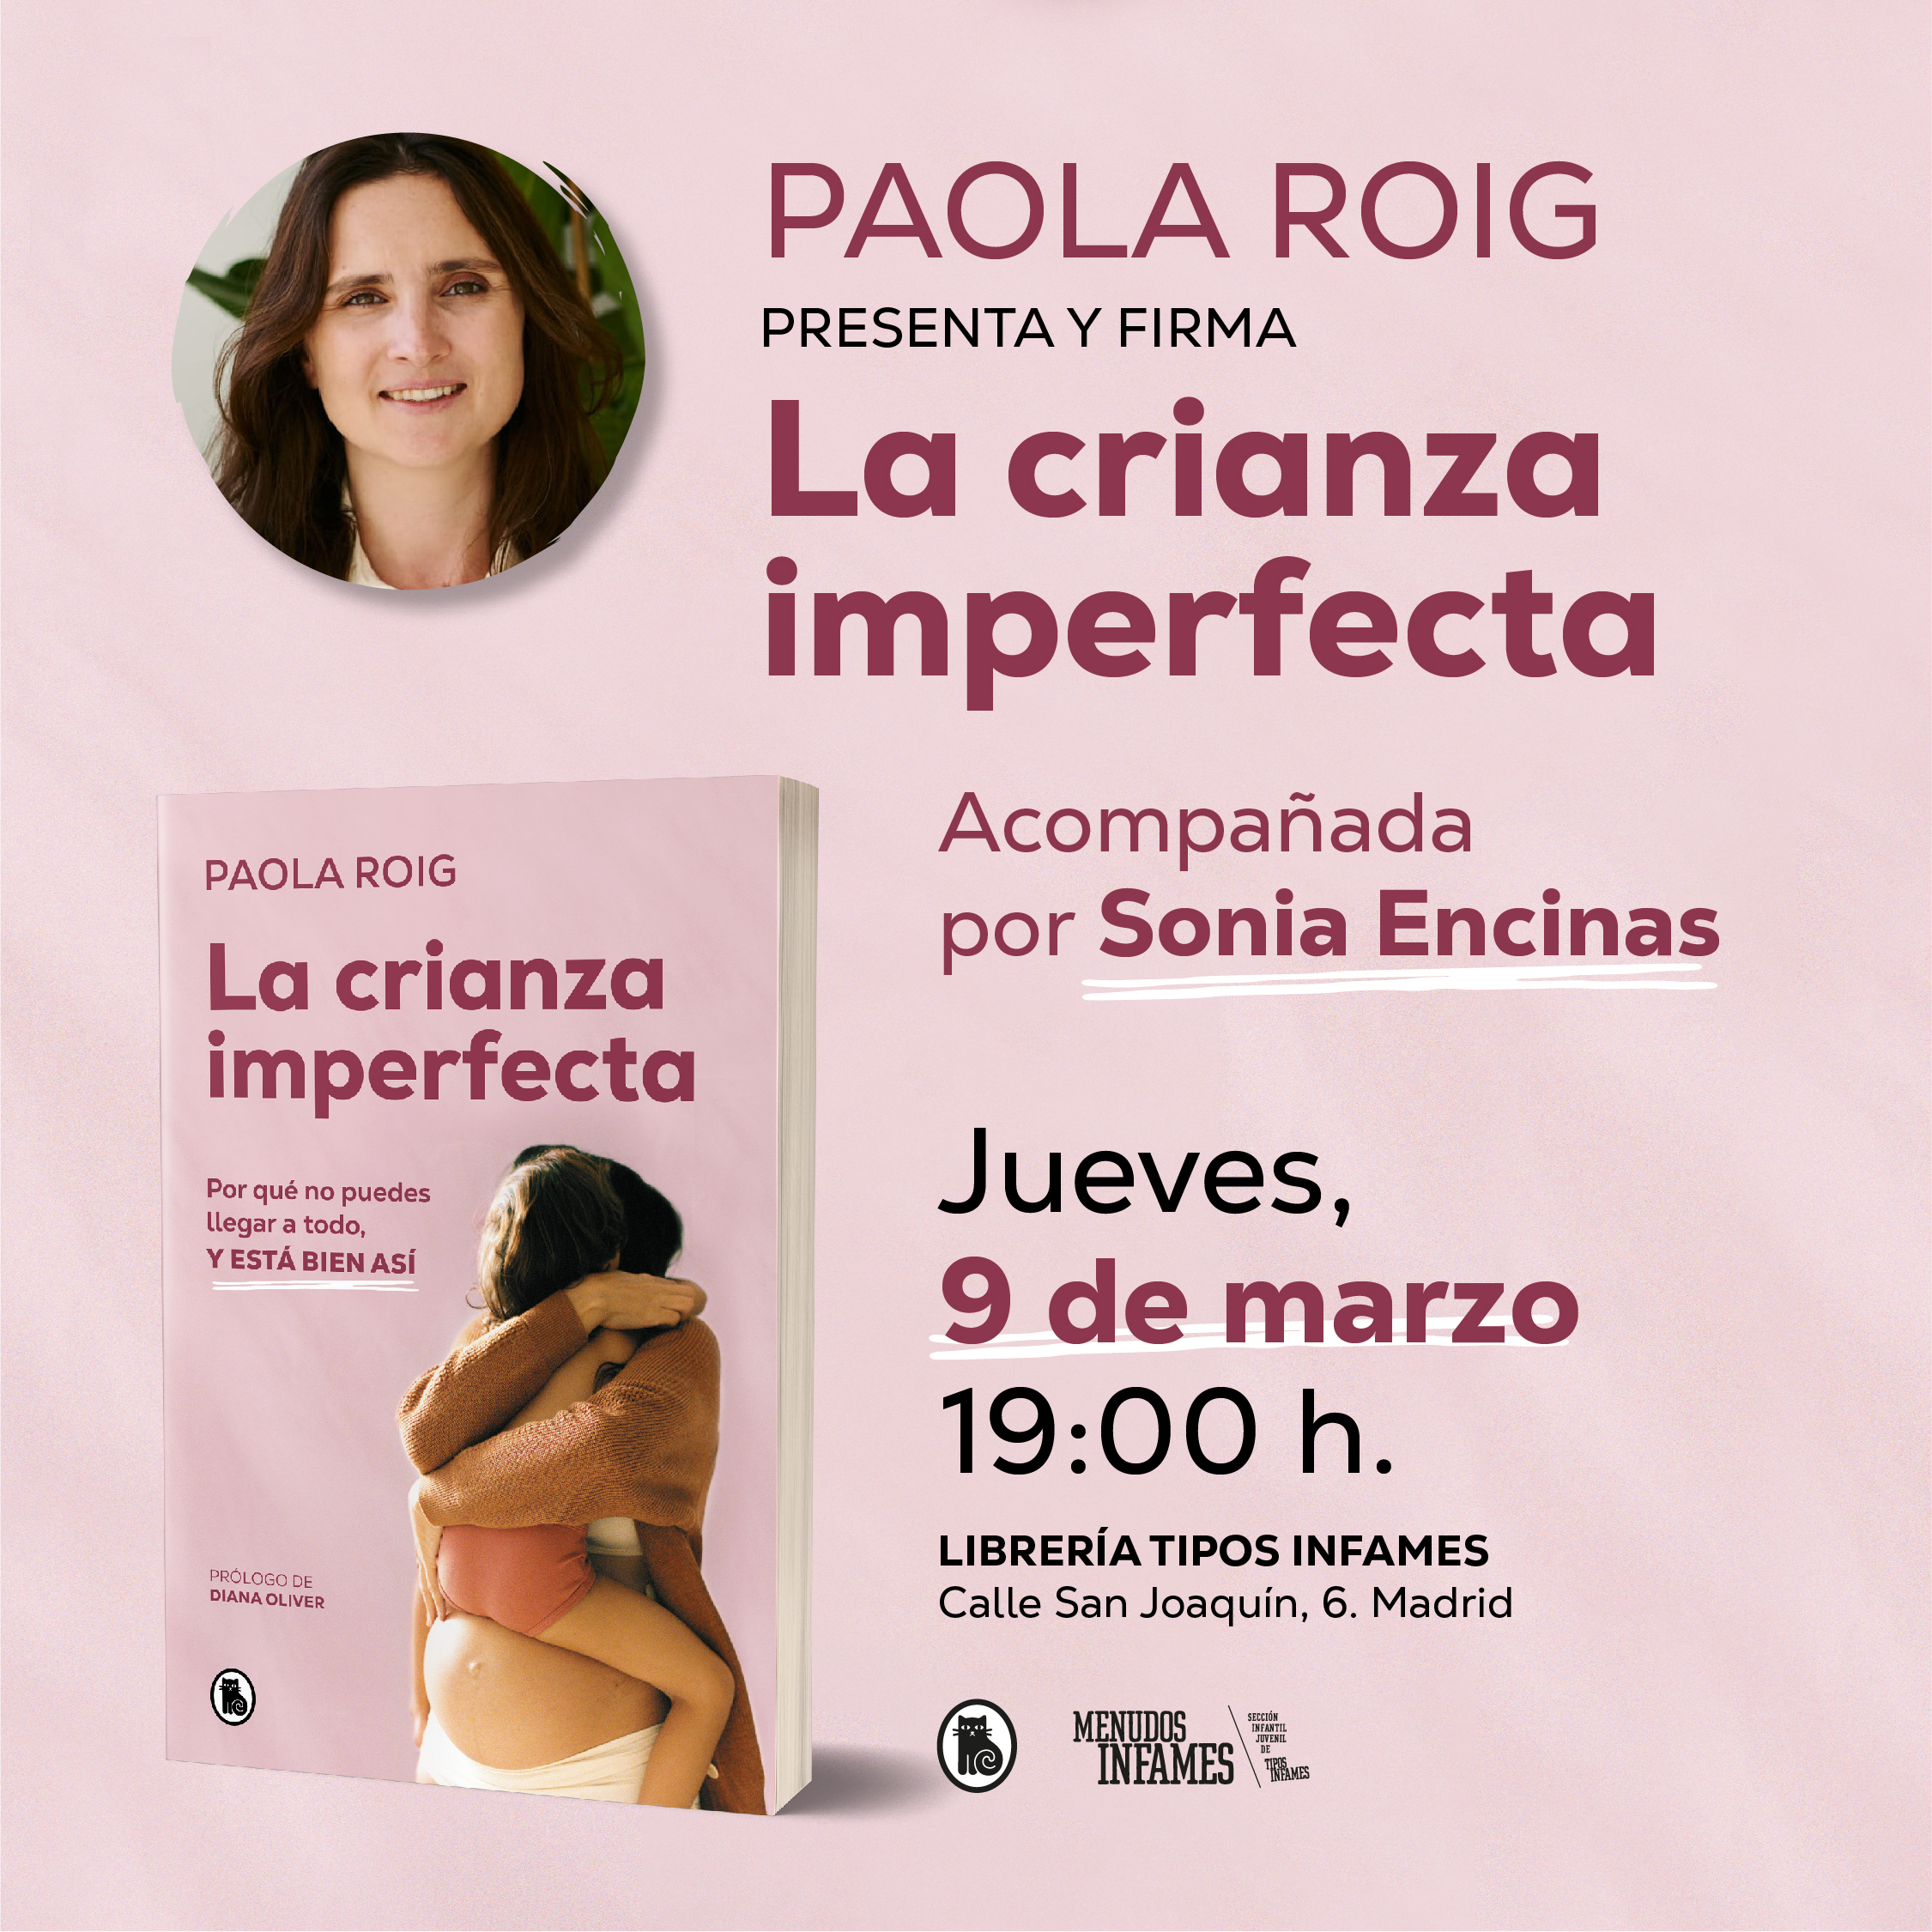 Paola Roig, psicóloga perinatal: “Una de las bases de la crianza